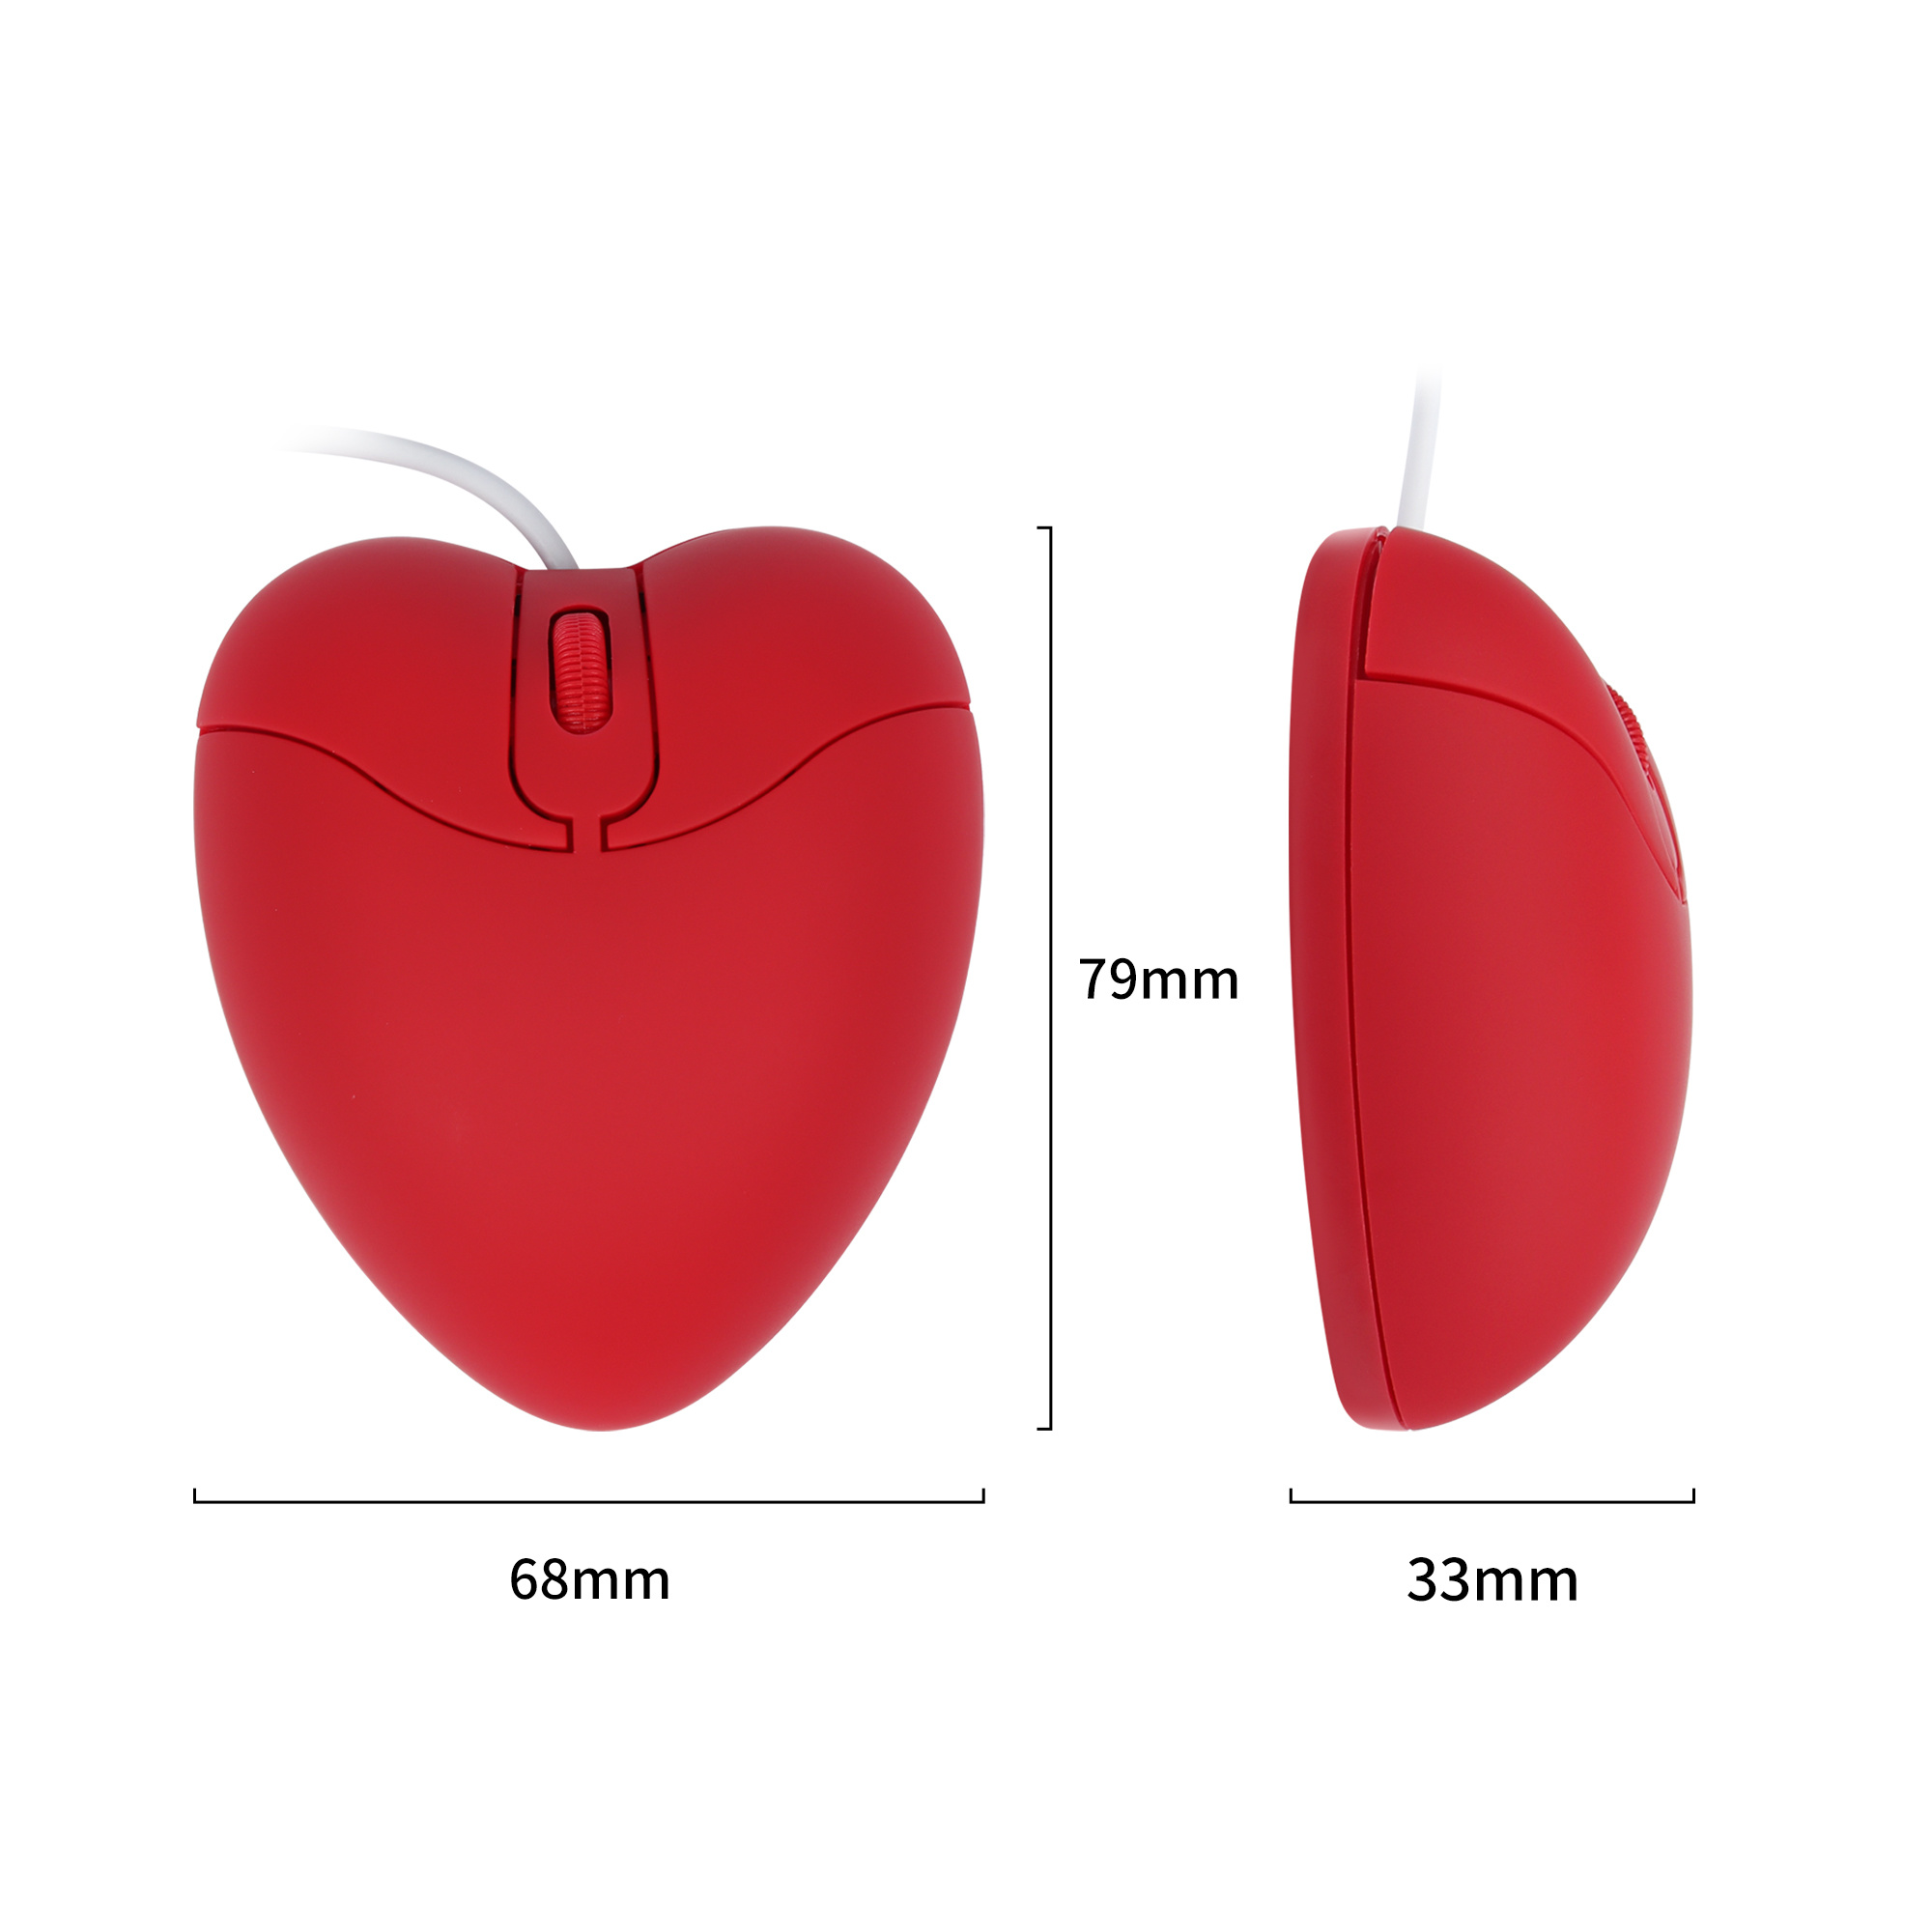 Mouse-Kabel-Komputer-USB-Optik-Kaulinan-Kréatif-Imut-Mause-Ergonomis-Cinta-Hati-3D-Beurit-Pikeun-Laptop (4)